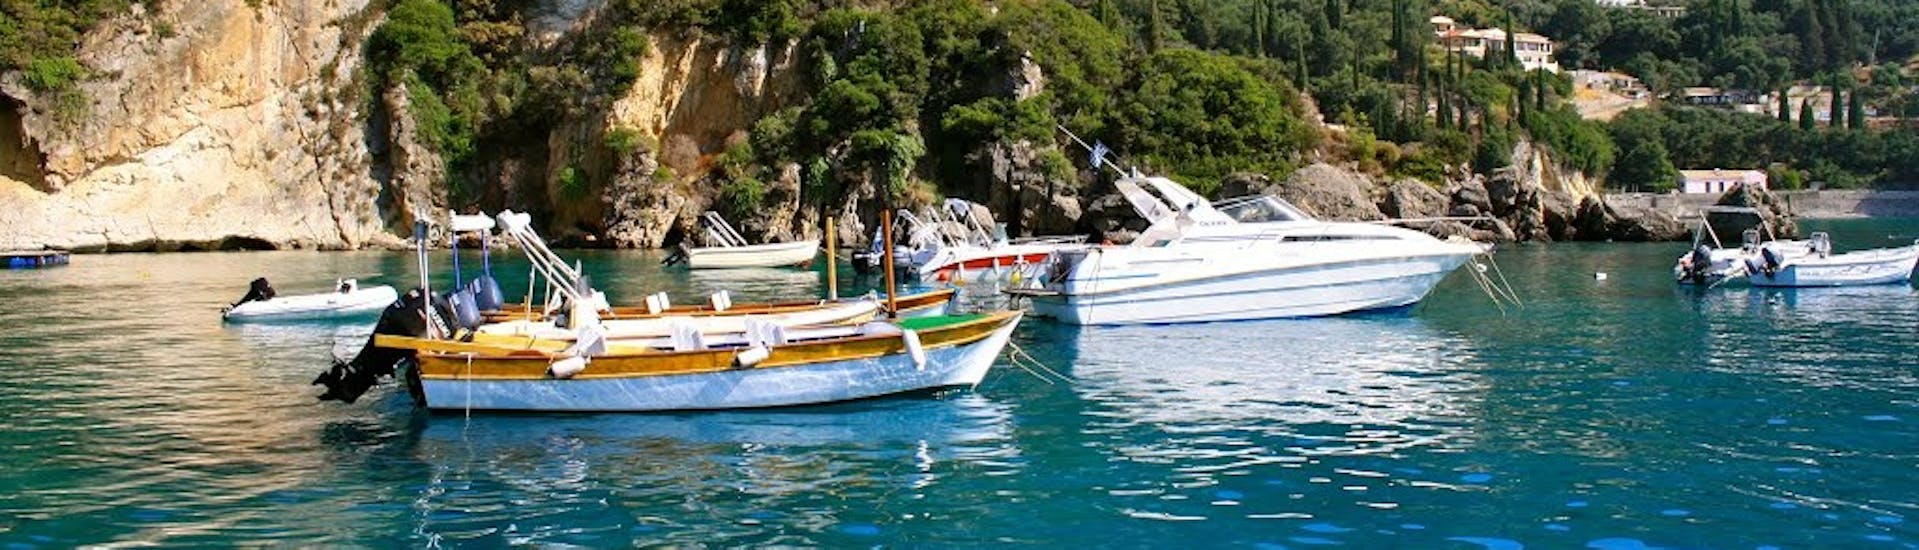 Mensen op een boot van de bootverhuur in Palaiokastritsa op Corfu (tot 4 personen)Ski Club 105 Boat Rental Corfu.